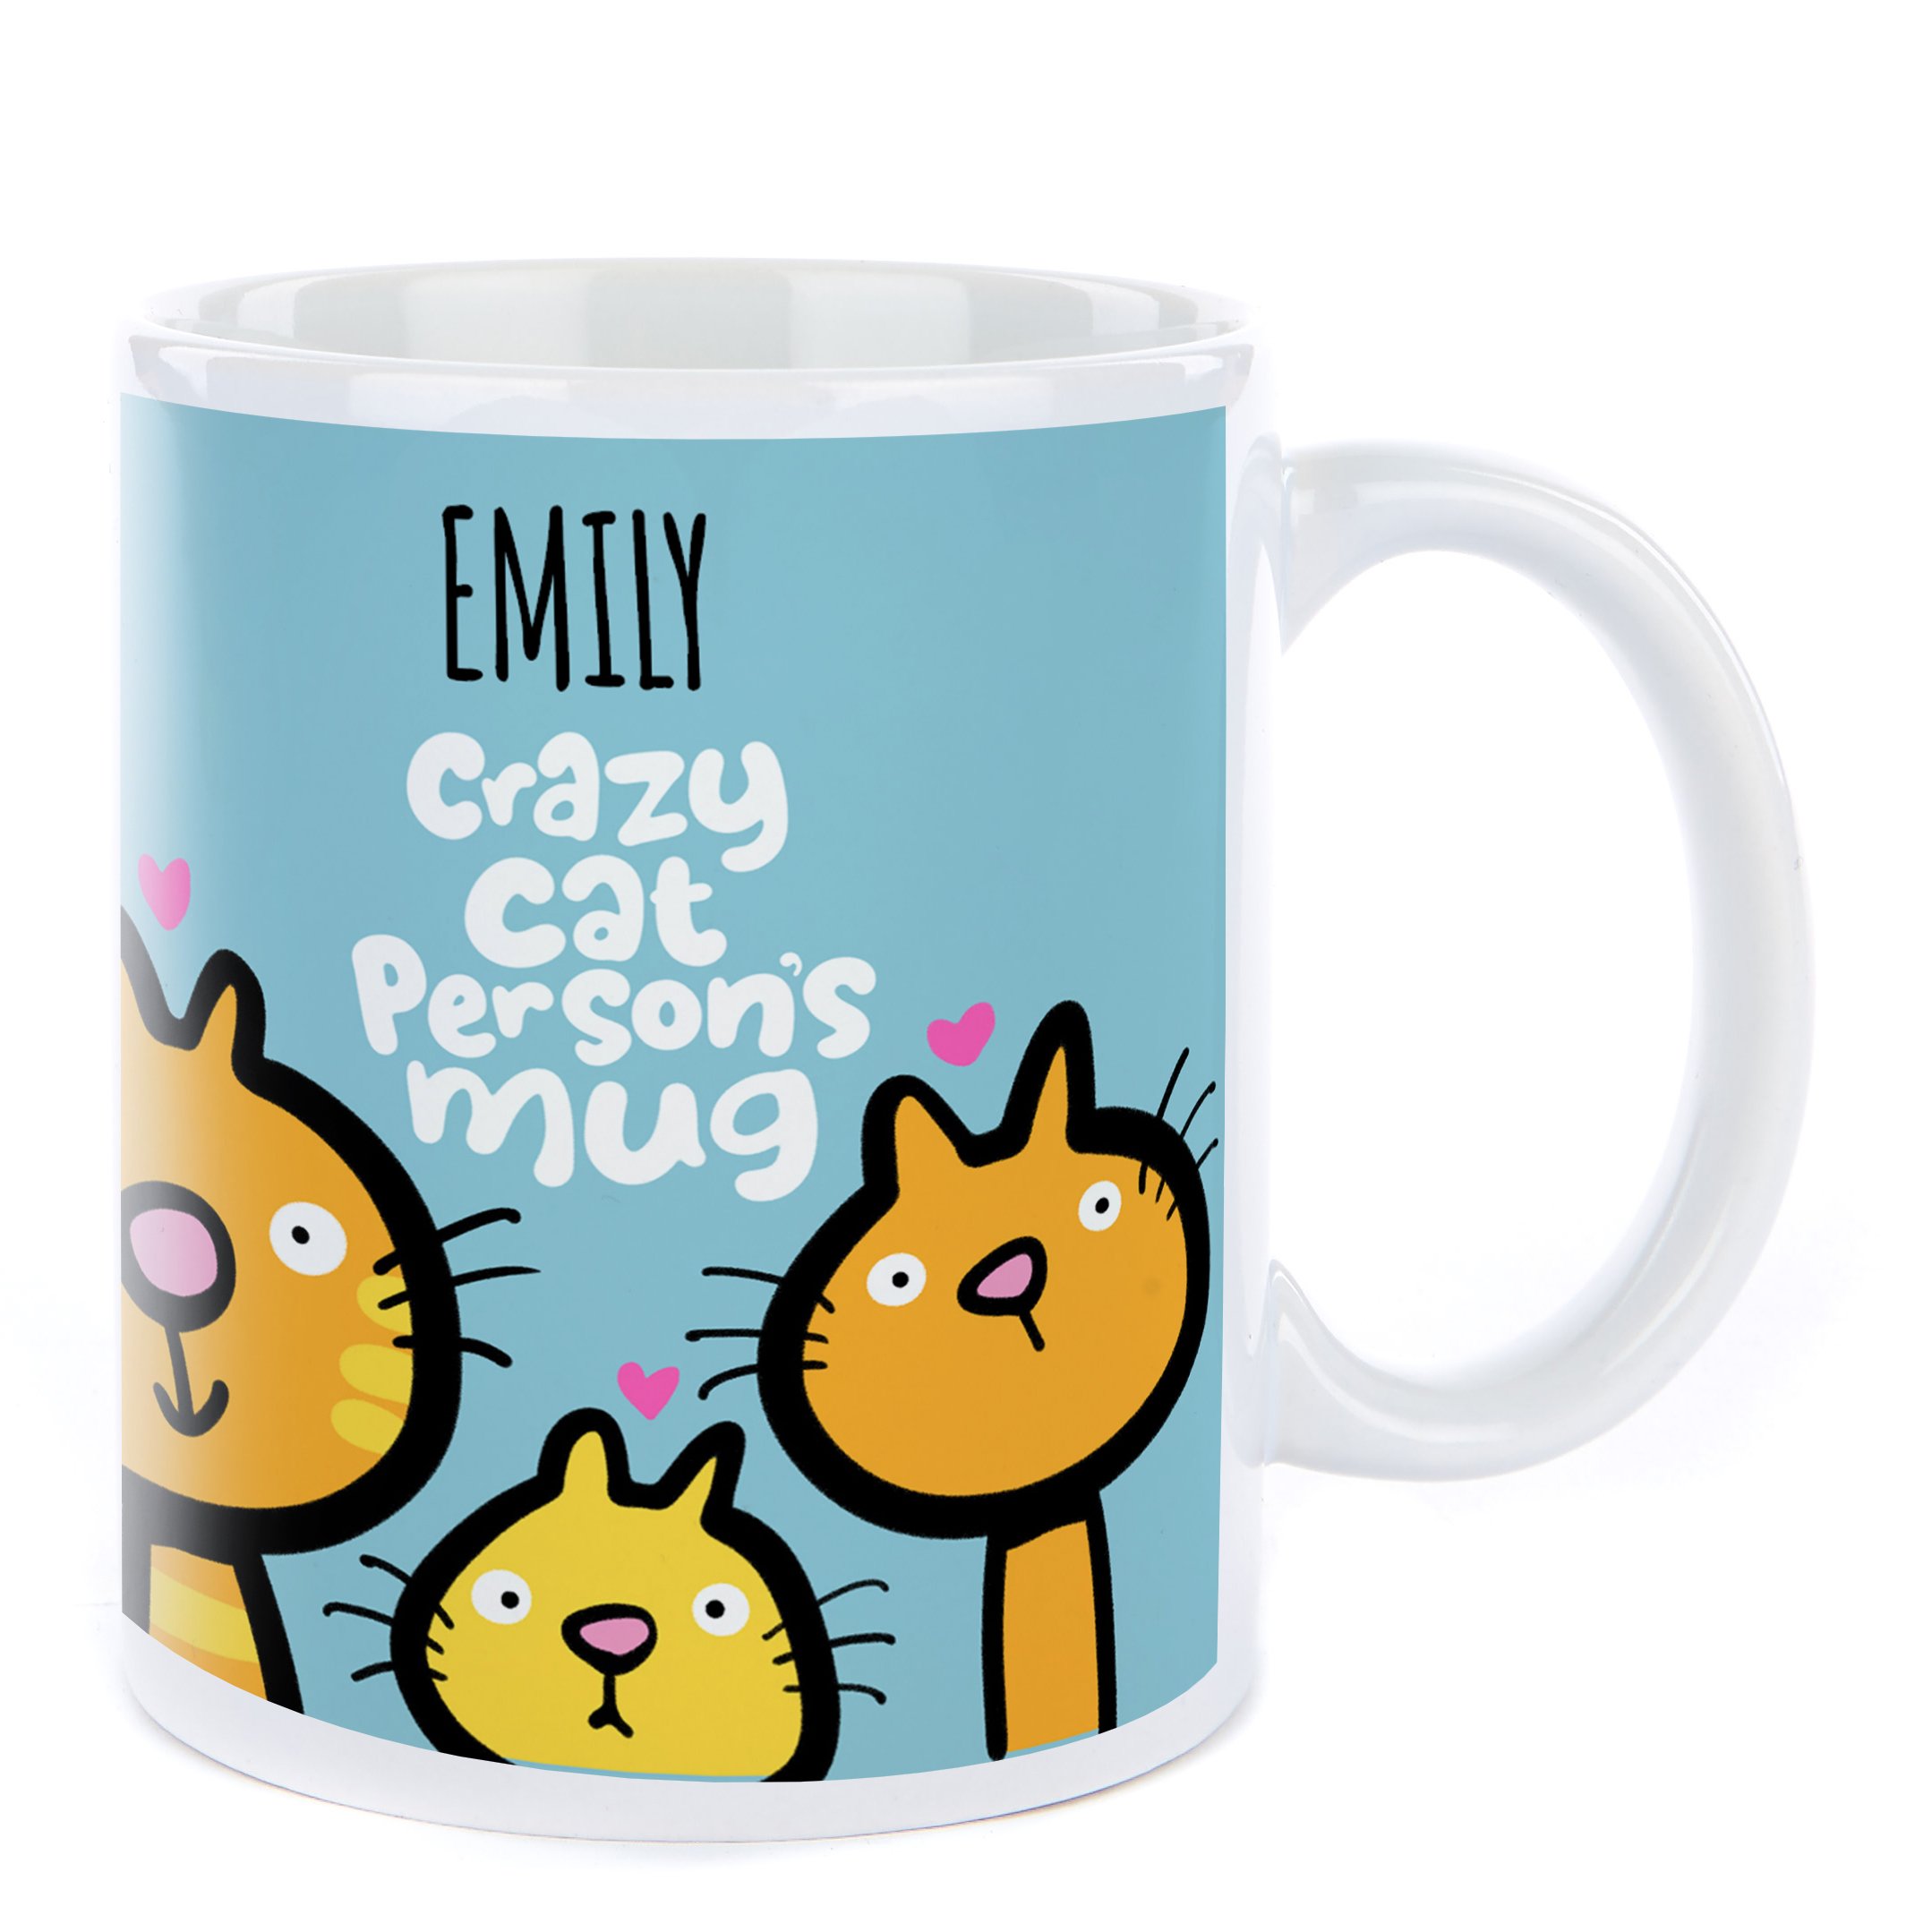 Personalised Fruitloops Mug - Crazy Cat Person